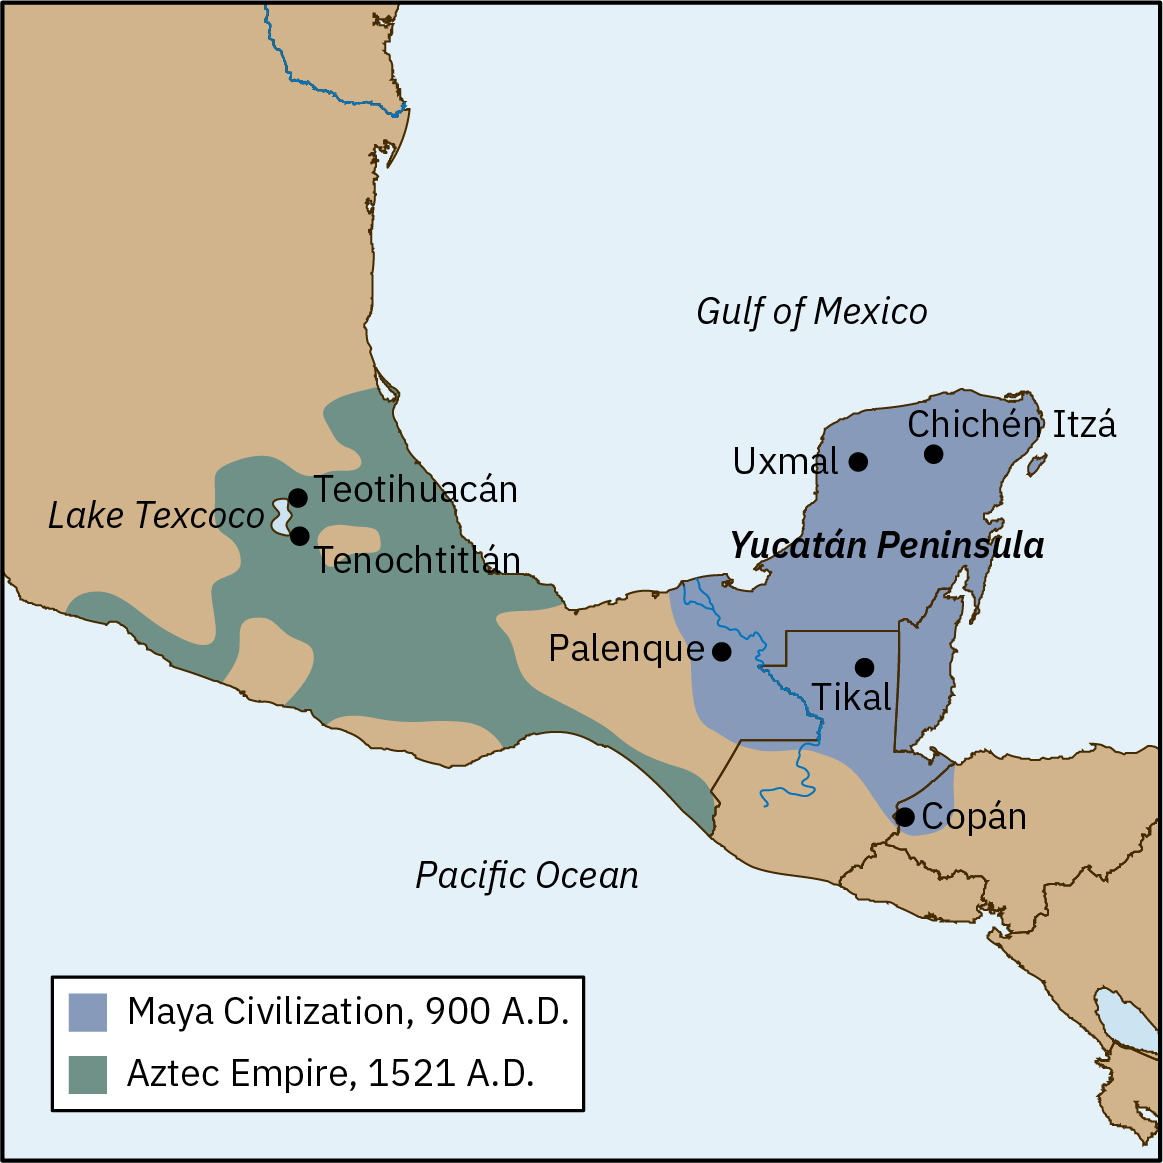 该地图描绘了大约公元 900 年的玛雅文明和大约公元 1521 年的阿兹台克帝国的范围。 玛雅文明占据了中美洲的整个尤卡坦半岛，包括科班、蒂卡尔、帕伦克、乌斯马尔和奇琴伊察等城市。 阿兹台克帝国占据了尤卡坦半岛以北的中美洲的一部分，包括特奥蒂瓦坎和特诺奇蒂特兰以及特斯科科湖。 这两个范围覆盖的面积大致相等。